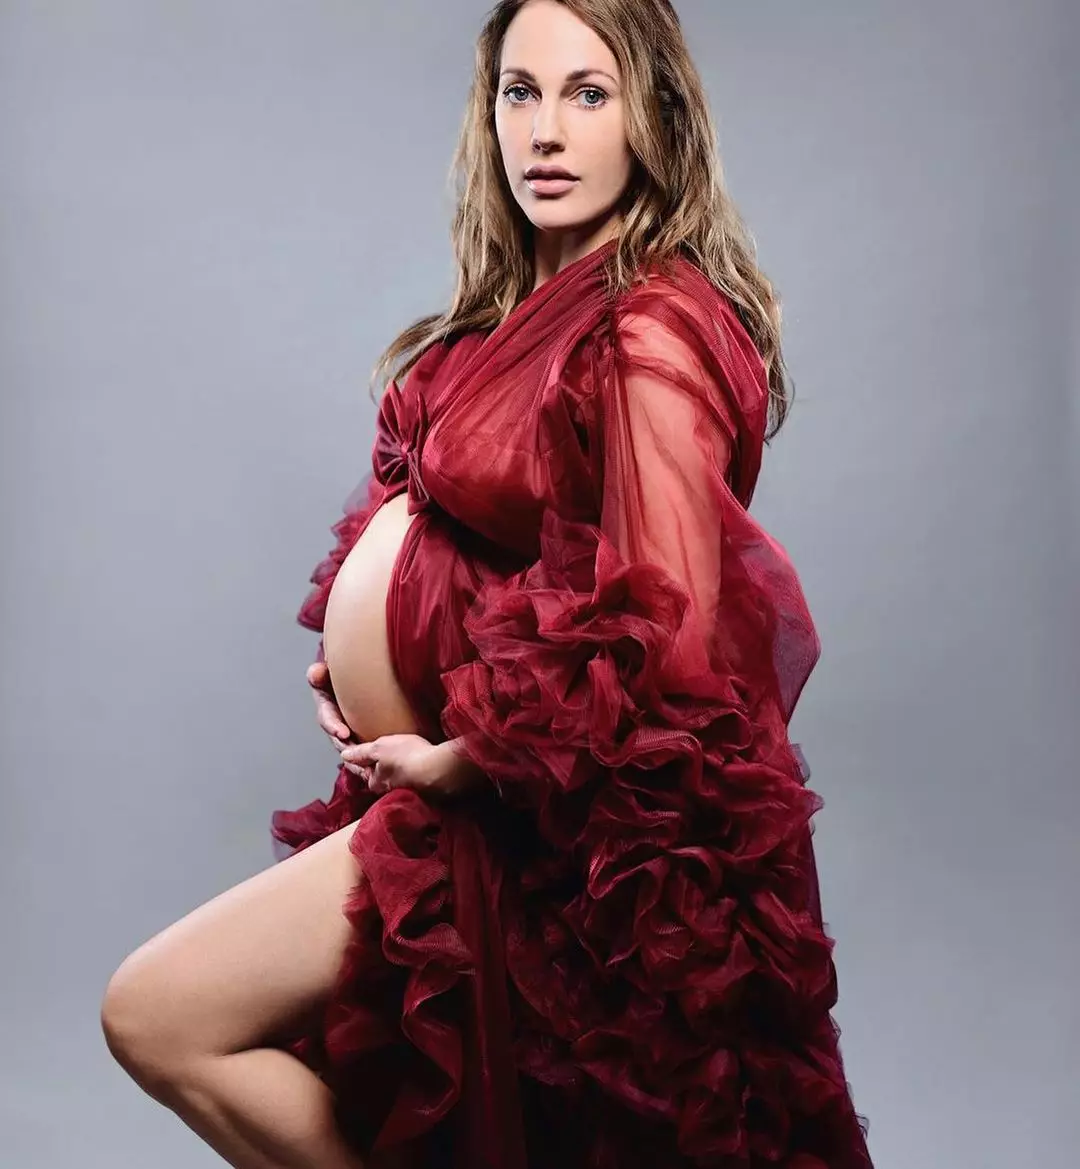 Мер'єм Узерлі на останньому місяці вагітності